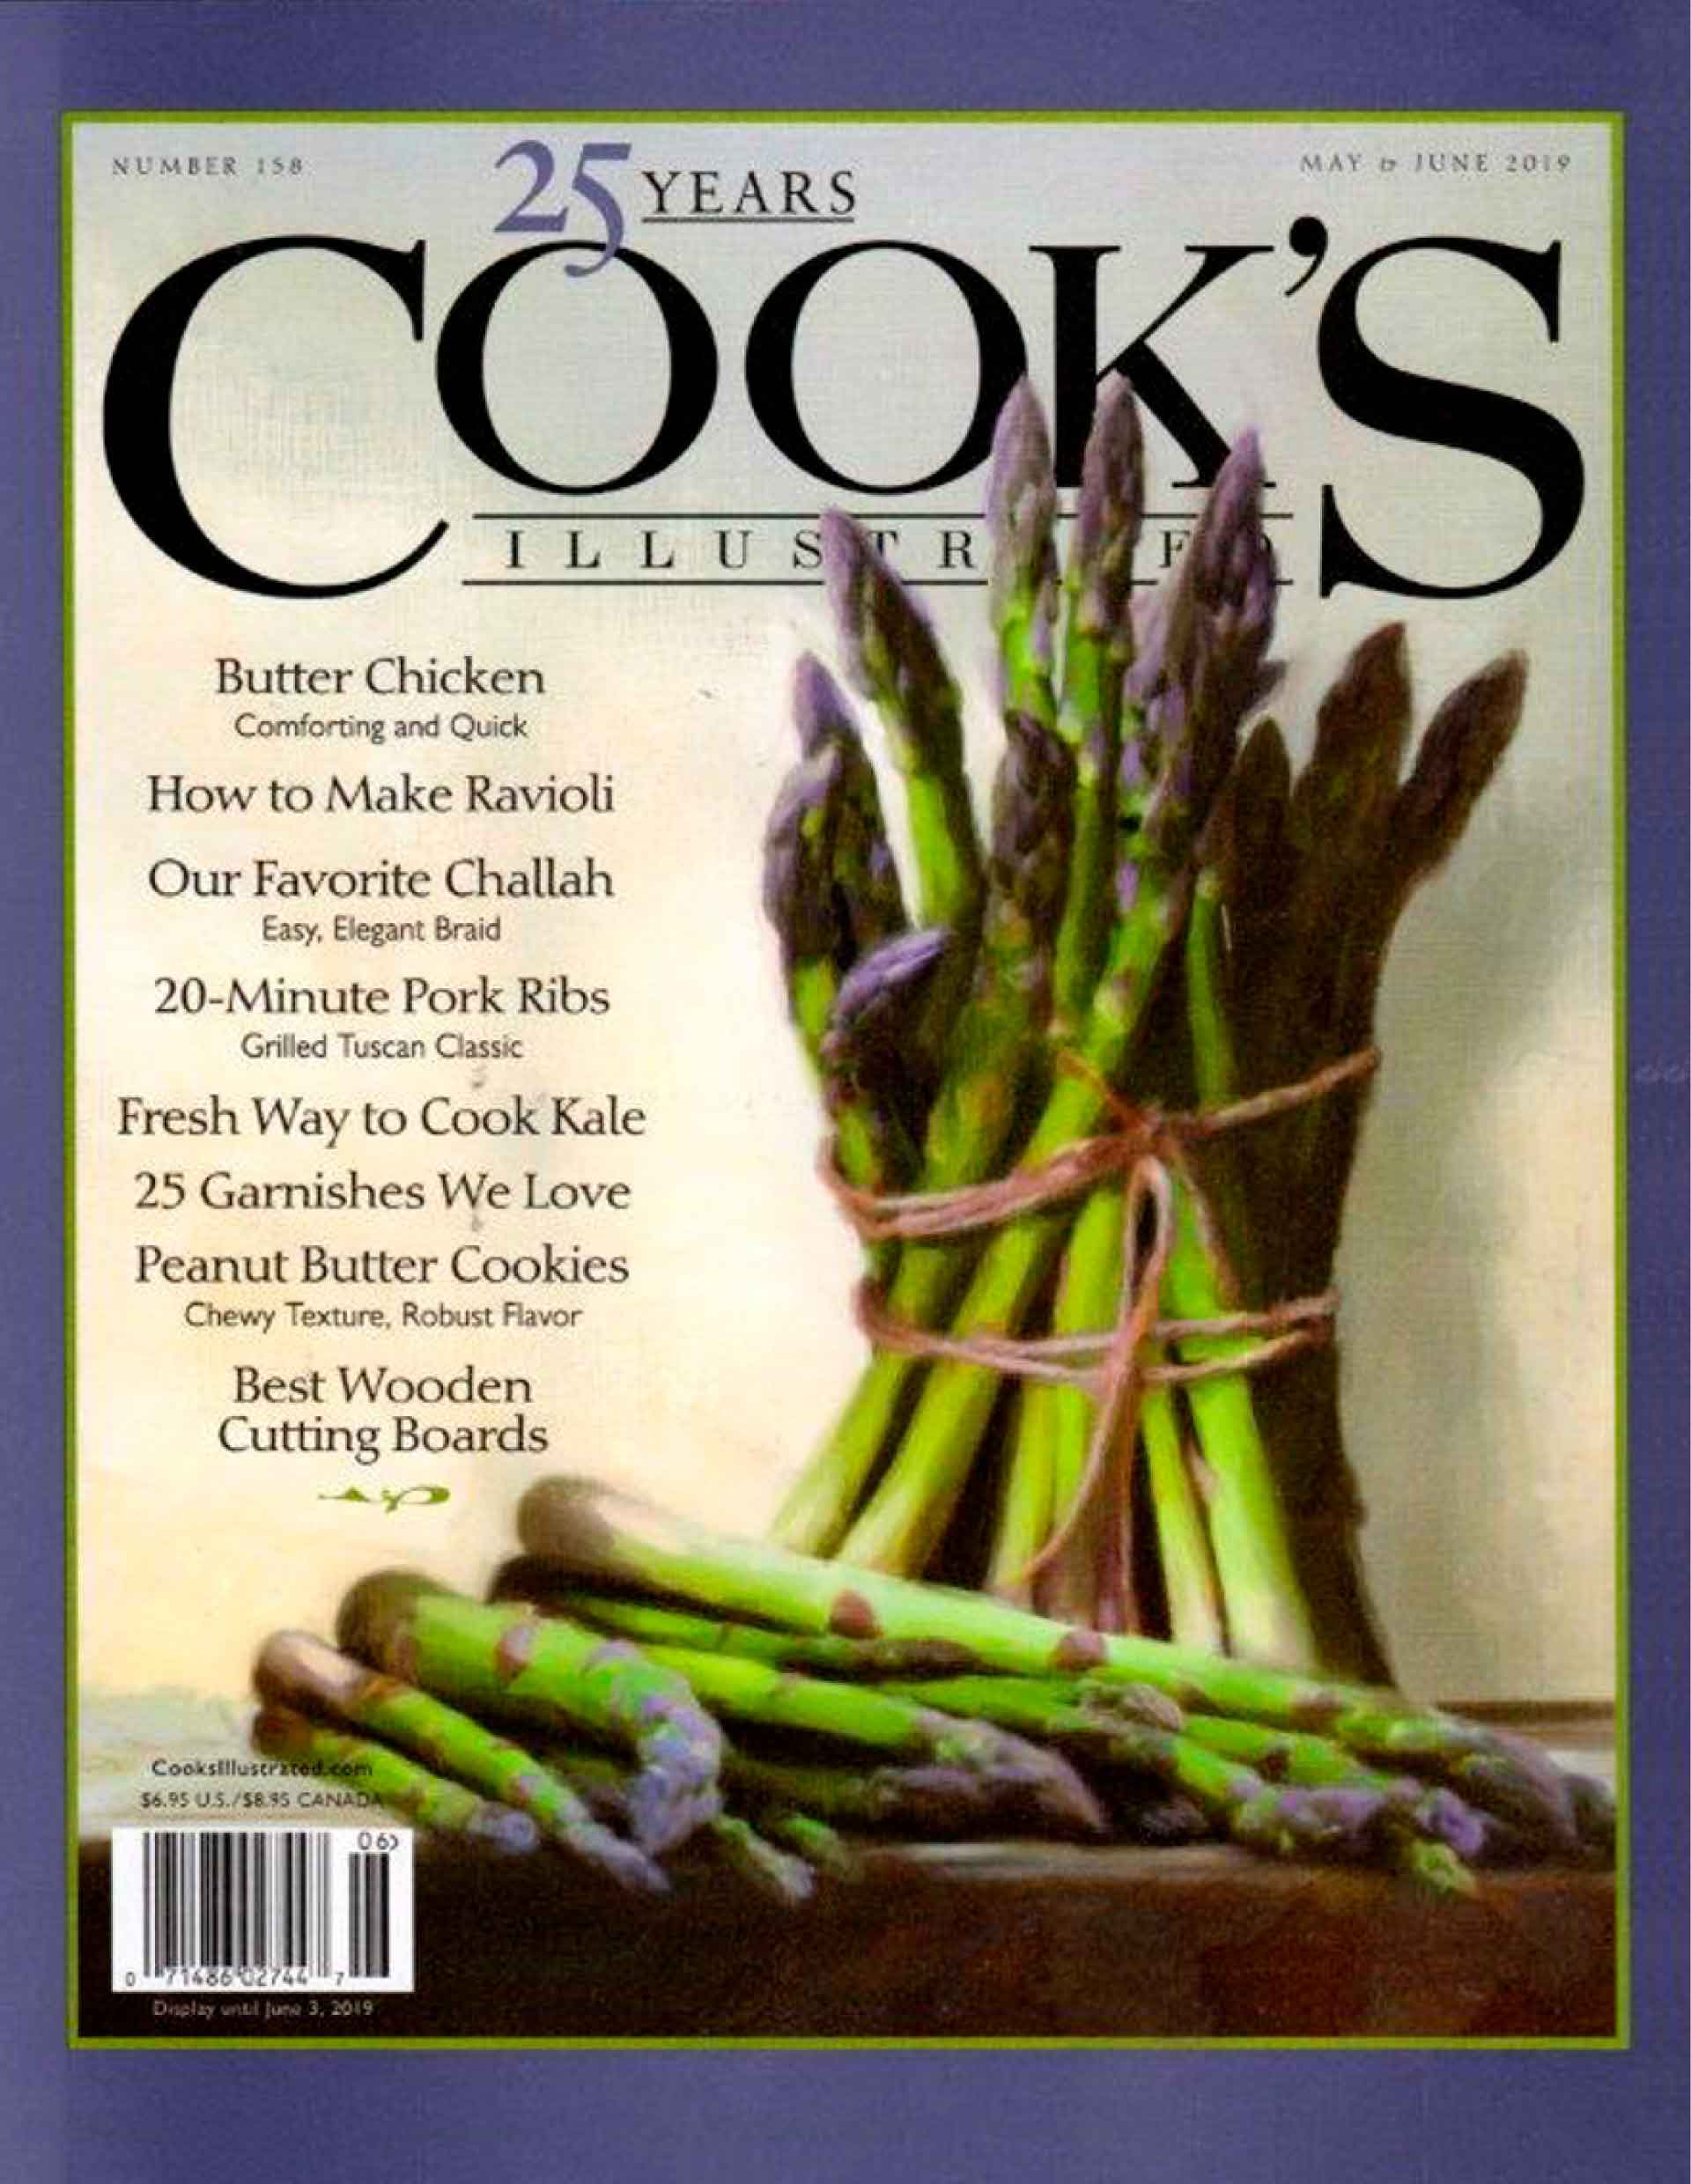 https://cdn.shopify.com/s/files/1/1865/9615/files/Cooks-Illustrated-Magazine.jpg?v=1611414884